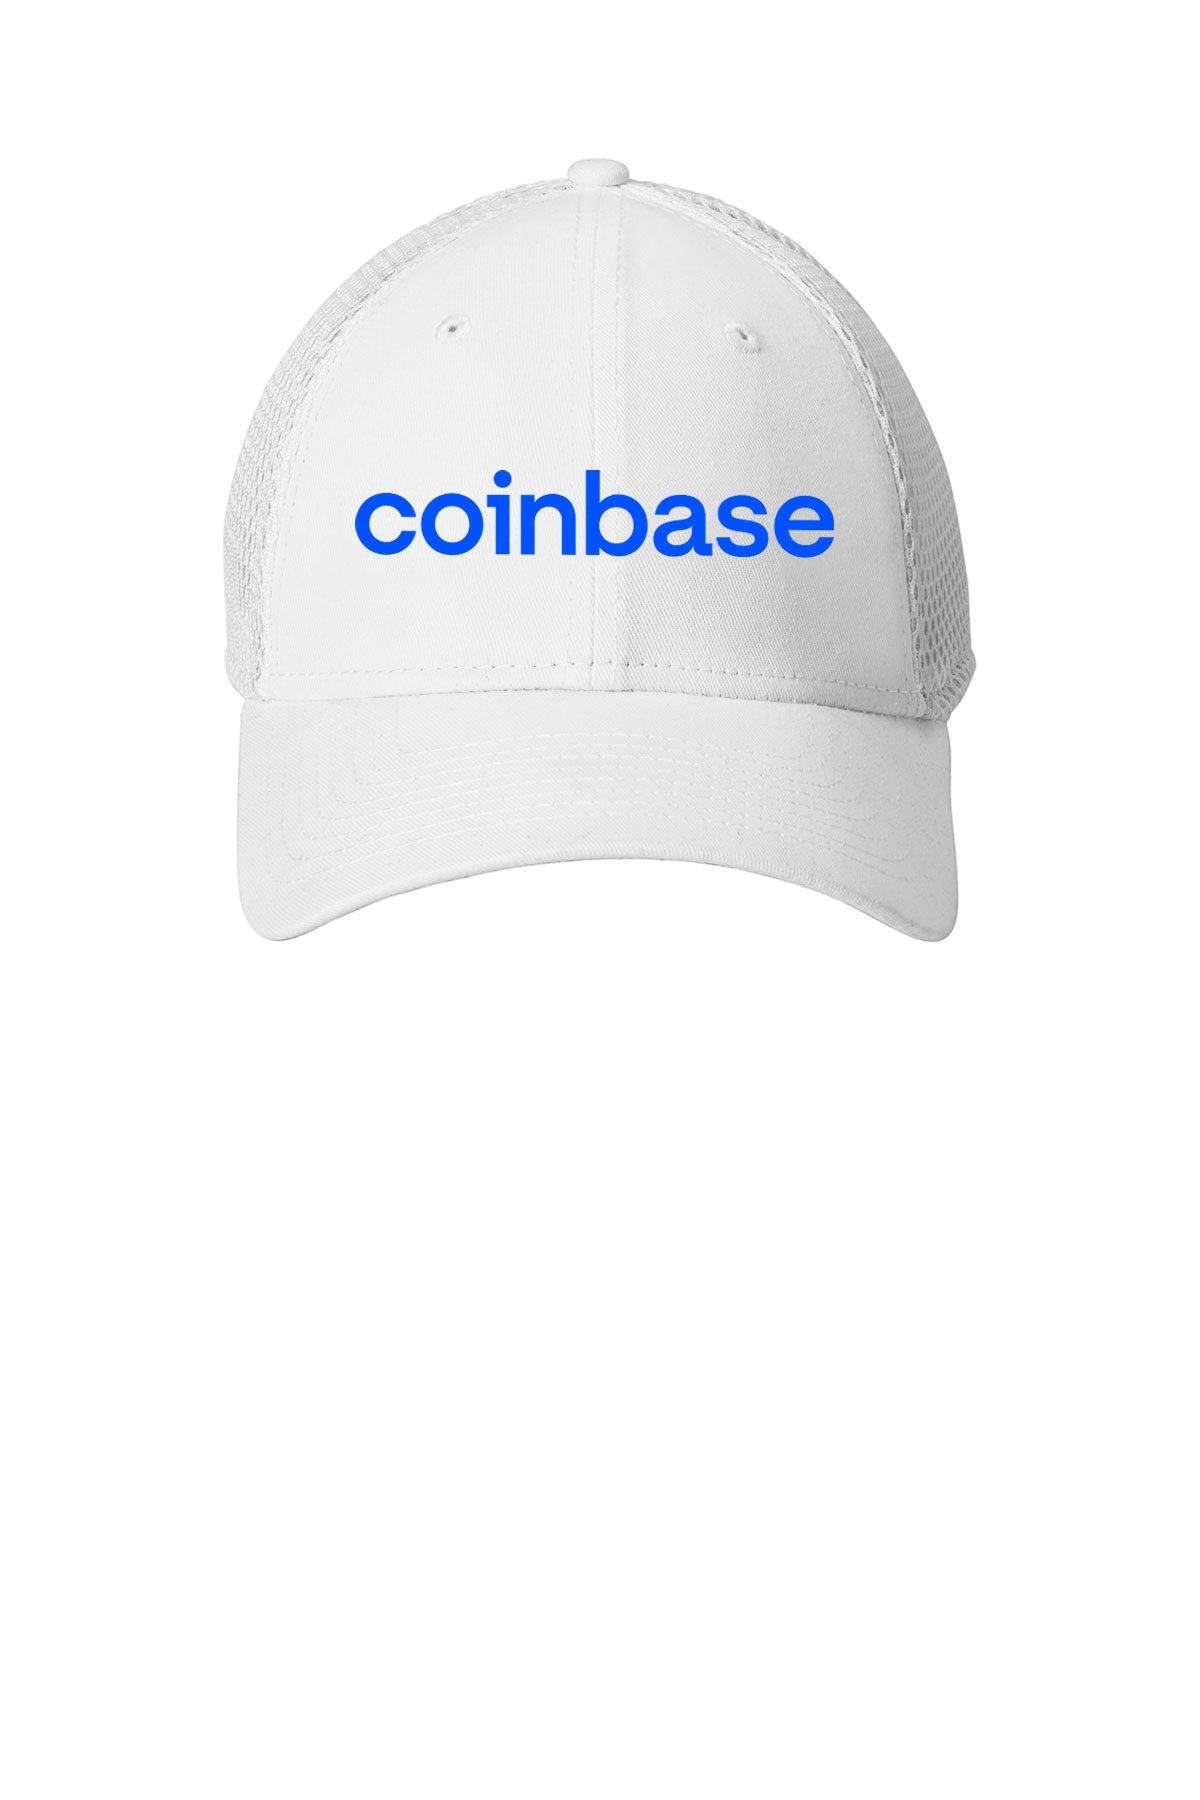 New Era Stretch Mesh Custom Caps, White [Coinbase]